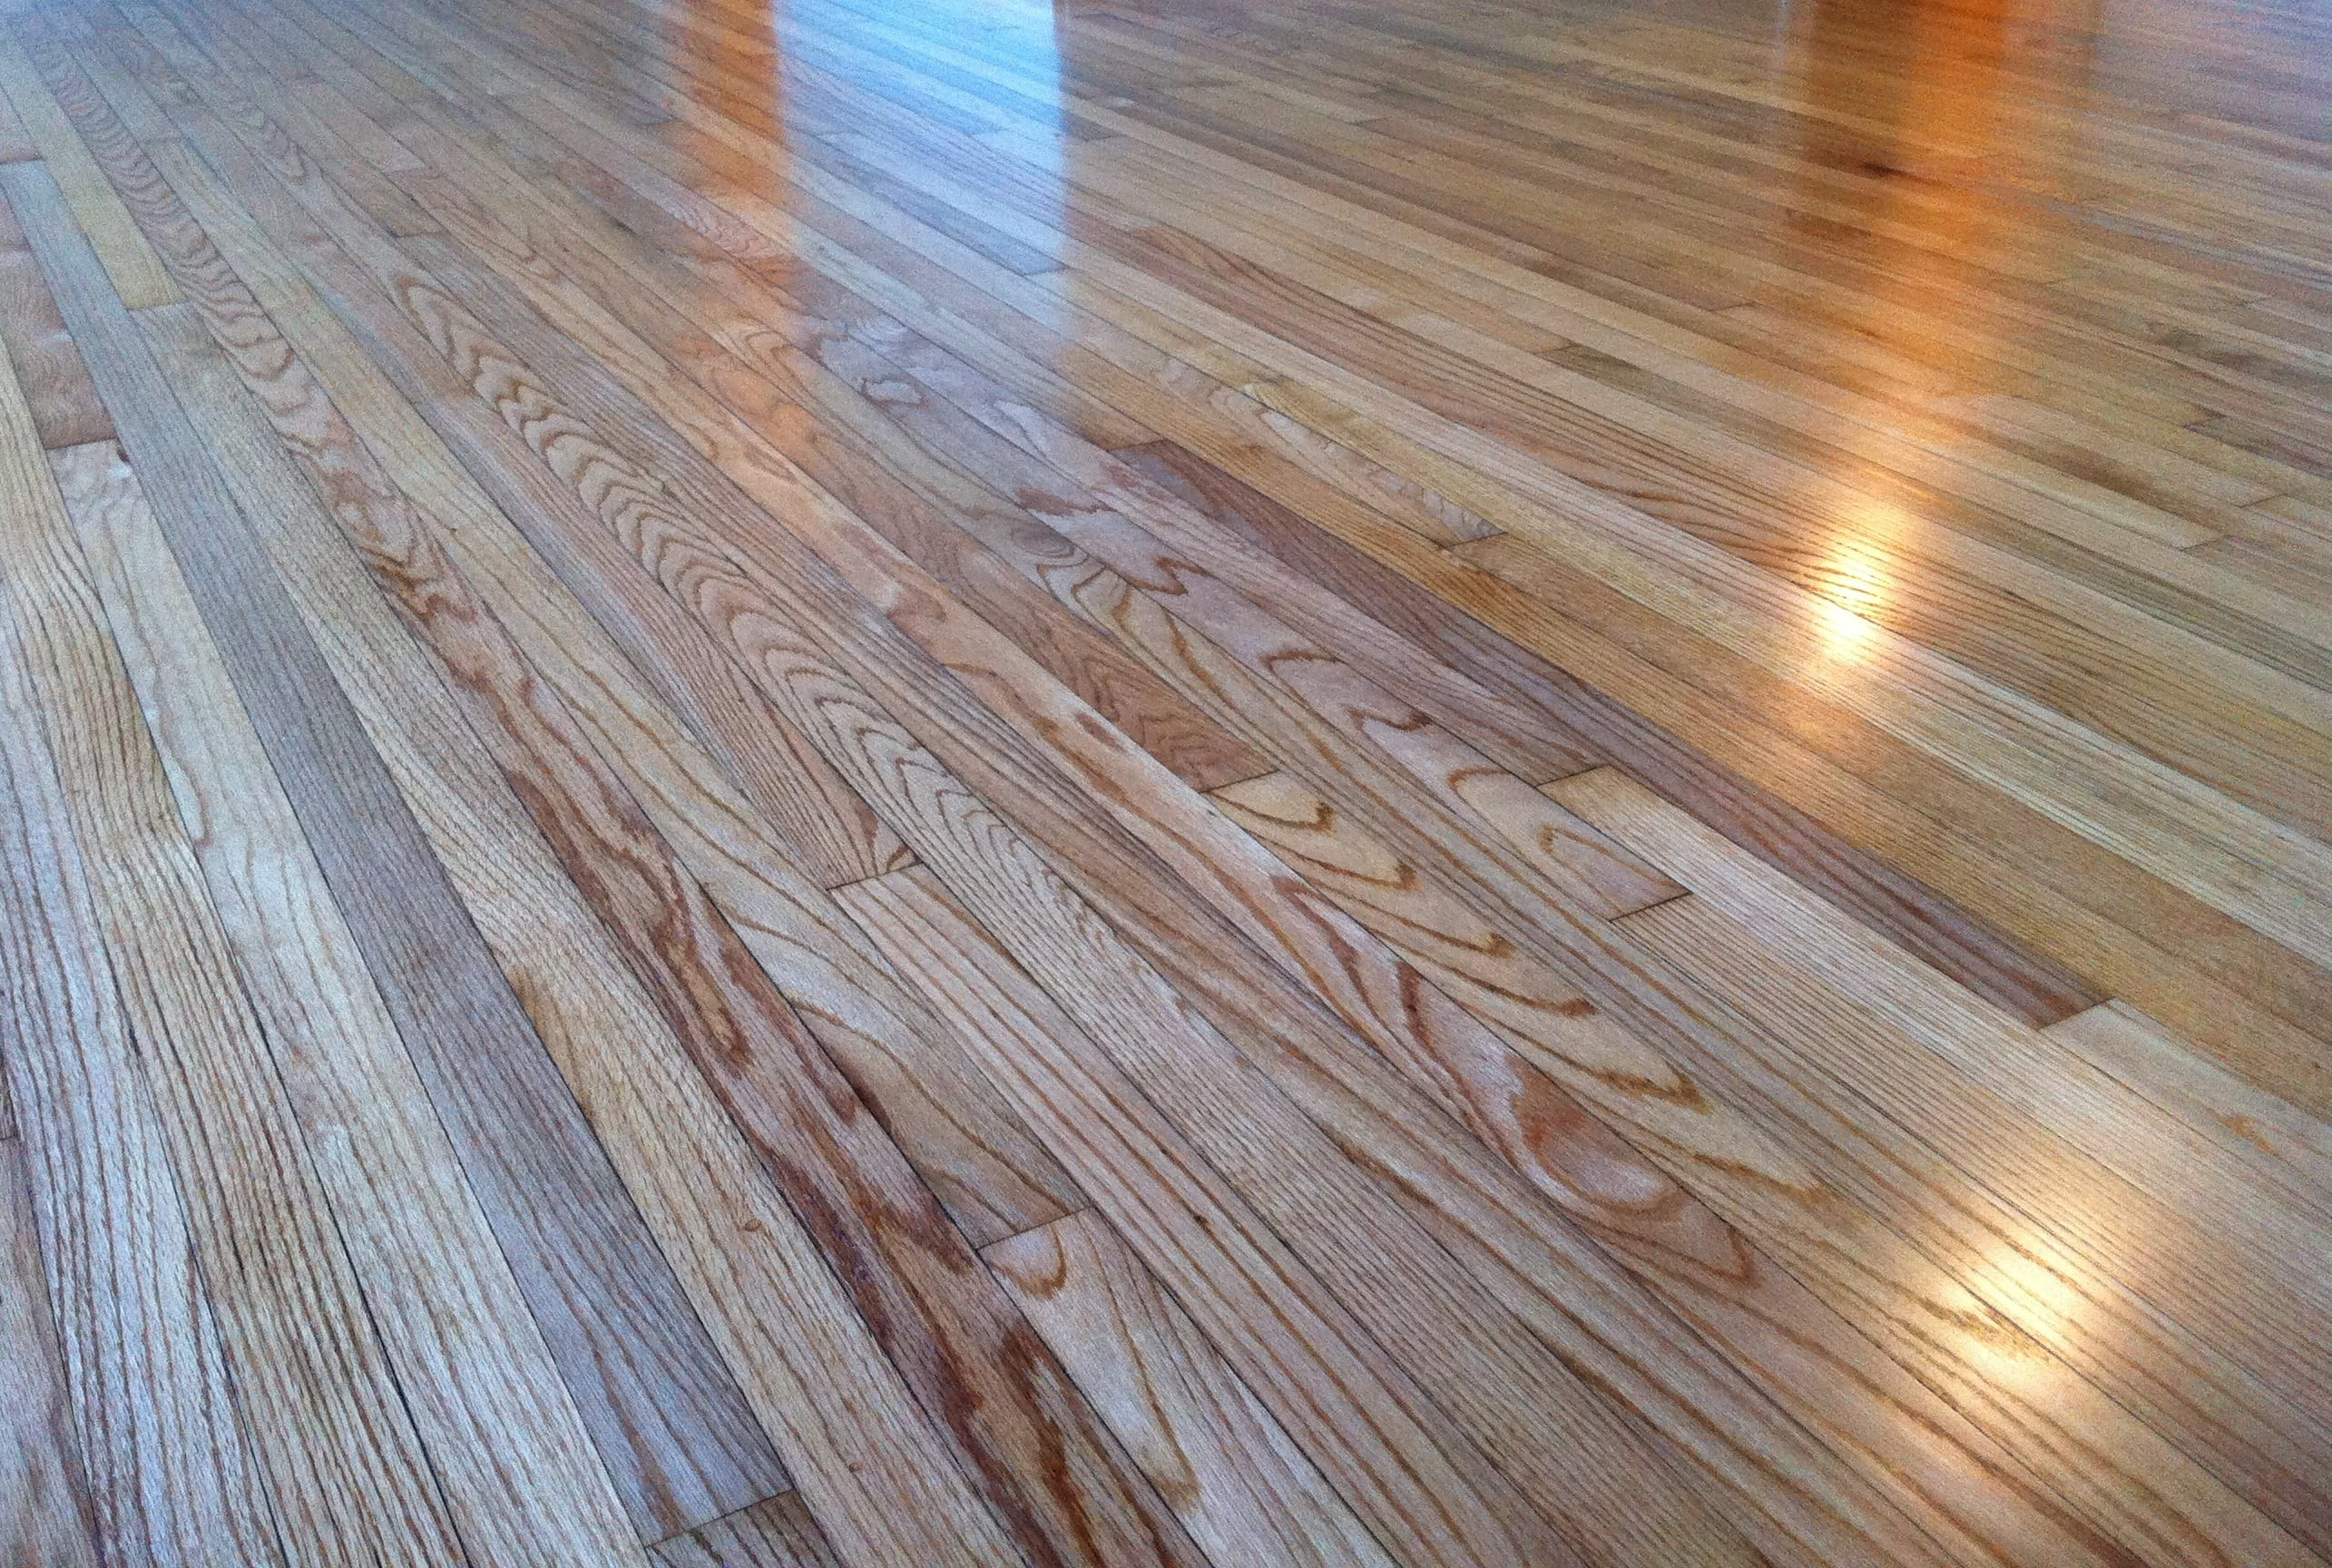 20 Recommended Hardwood Floor Refinishing Kalamazoo Mi 2022 free download hardwood floor refinishing kalamazoo mi of a history of wood floors inside 1940s red oak strip flooring